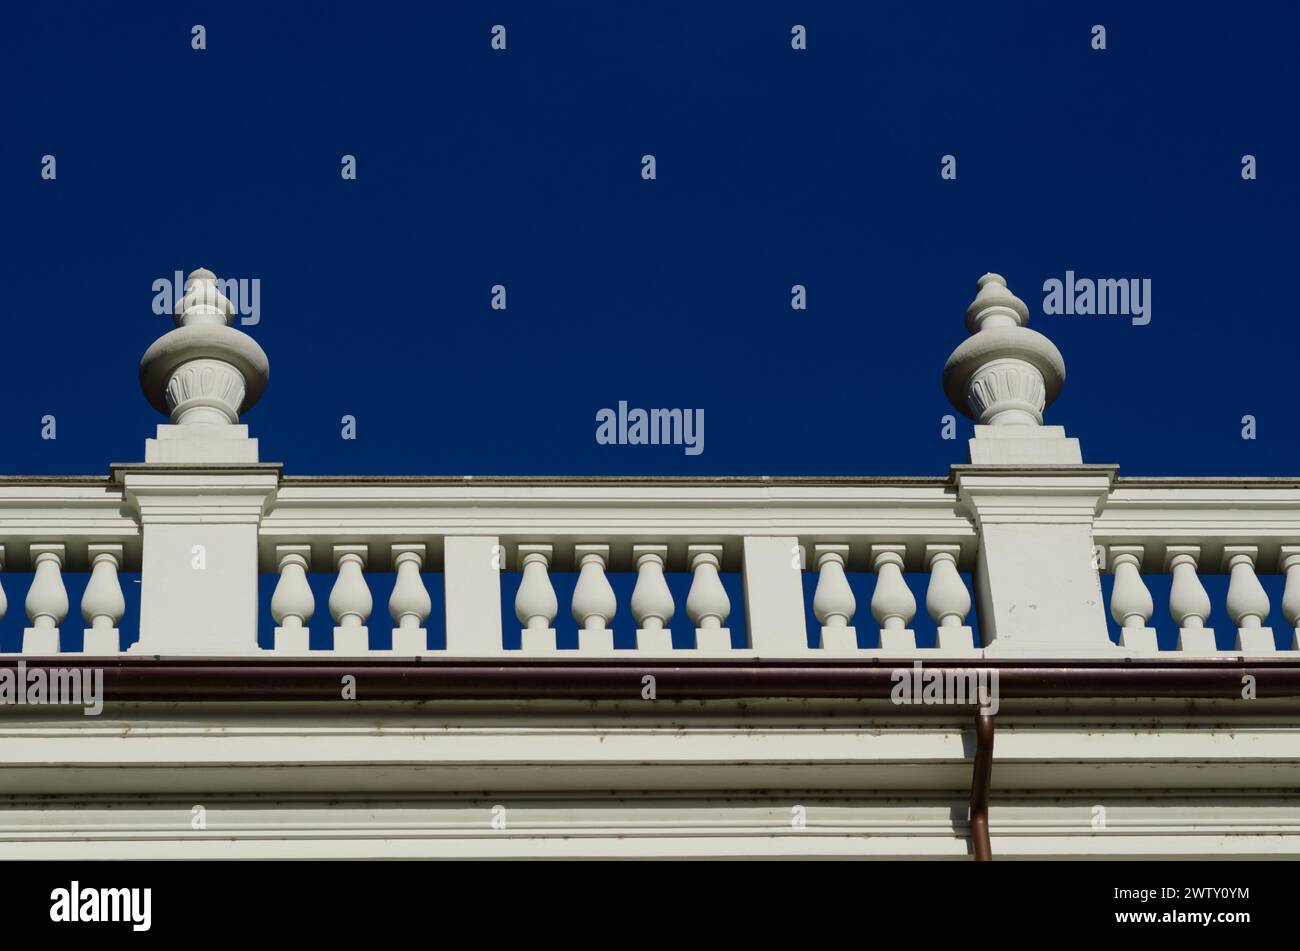 particolare di un elegante palazzo nobiliare, con elementi neoclassici di balaustra sul cono con colonne sulla facciata. sfondo al cielo blu intenso. Foto Stock